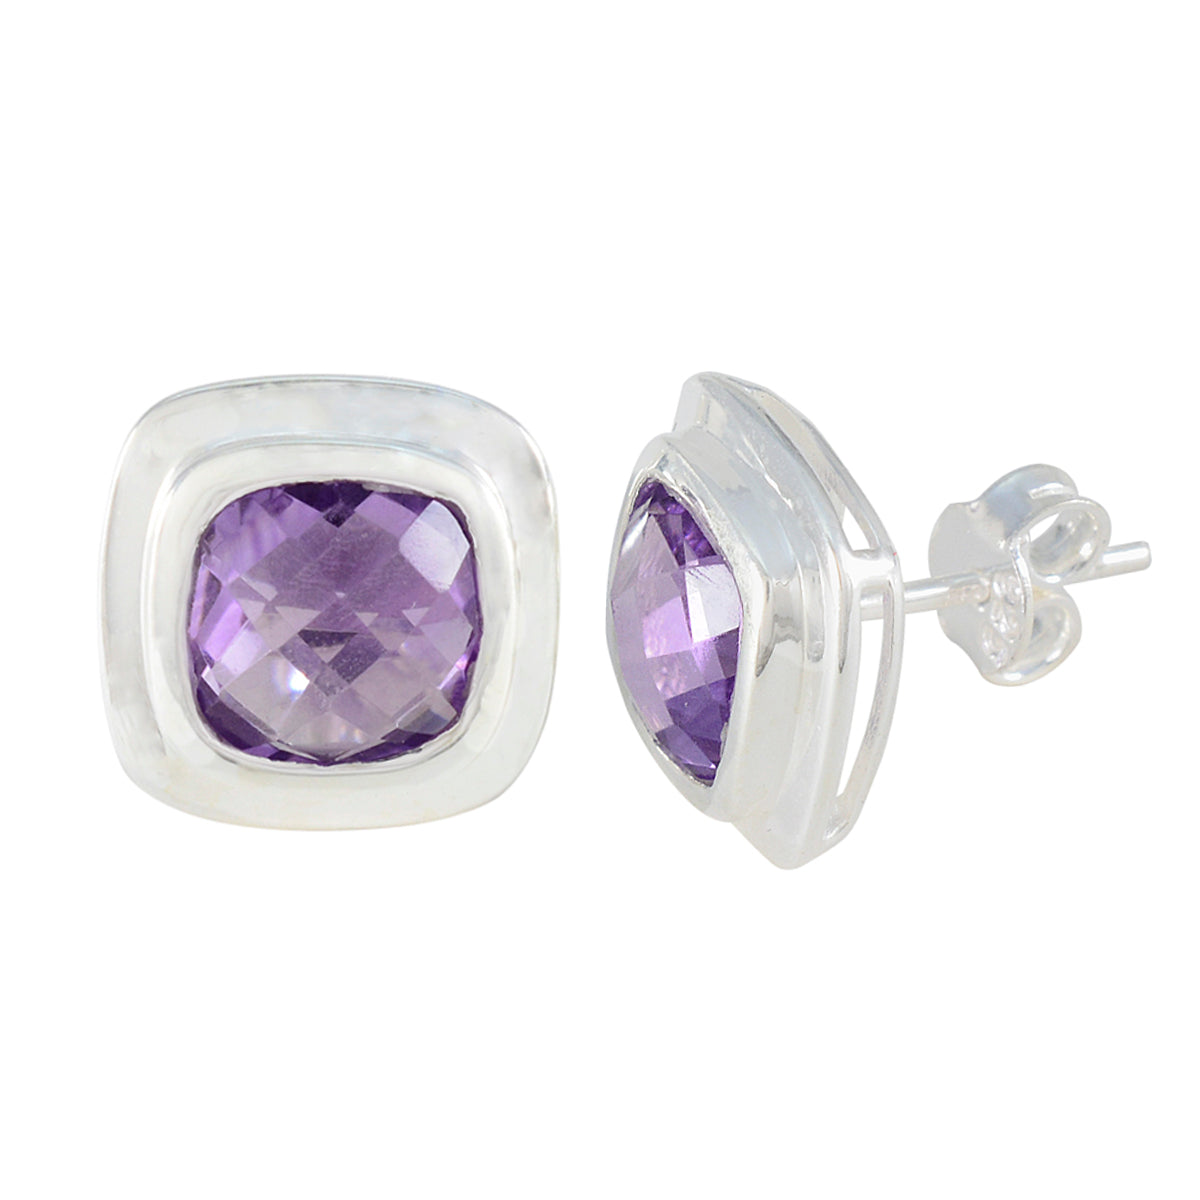 Riyo Nice-Looking 925 Sterling Silver Earring For Demoiselle Amethyst Earring Bezel Setting Purple Earring Stud Earring